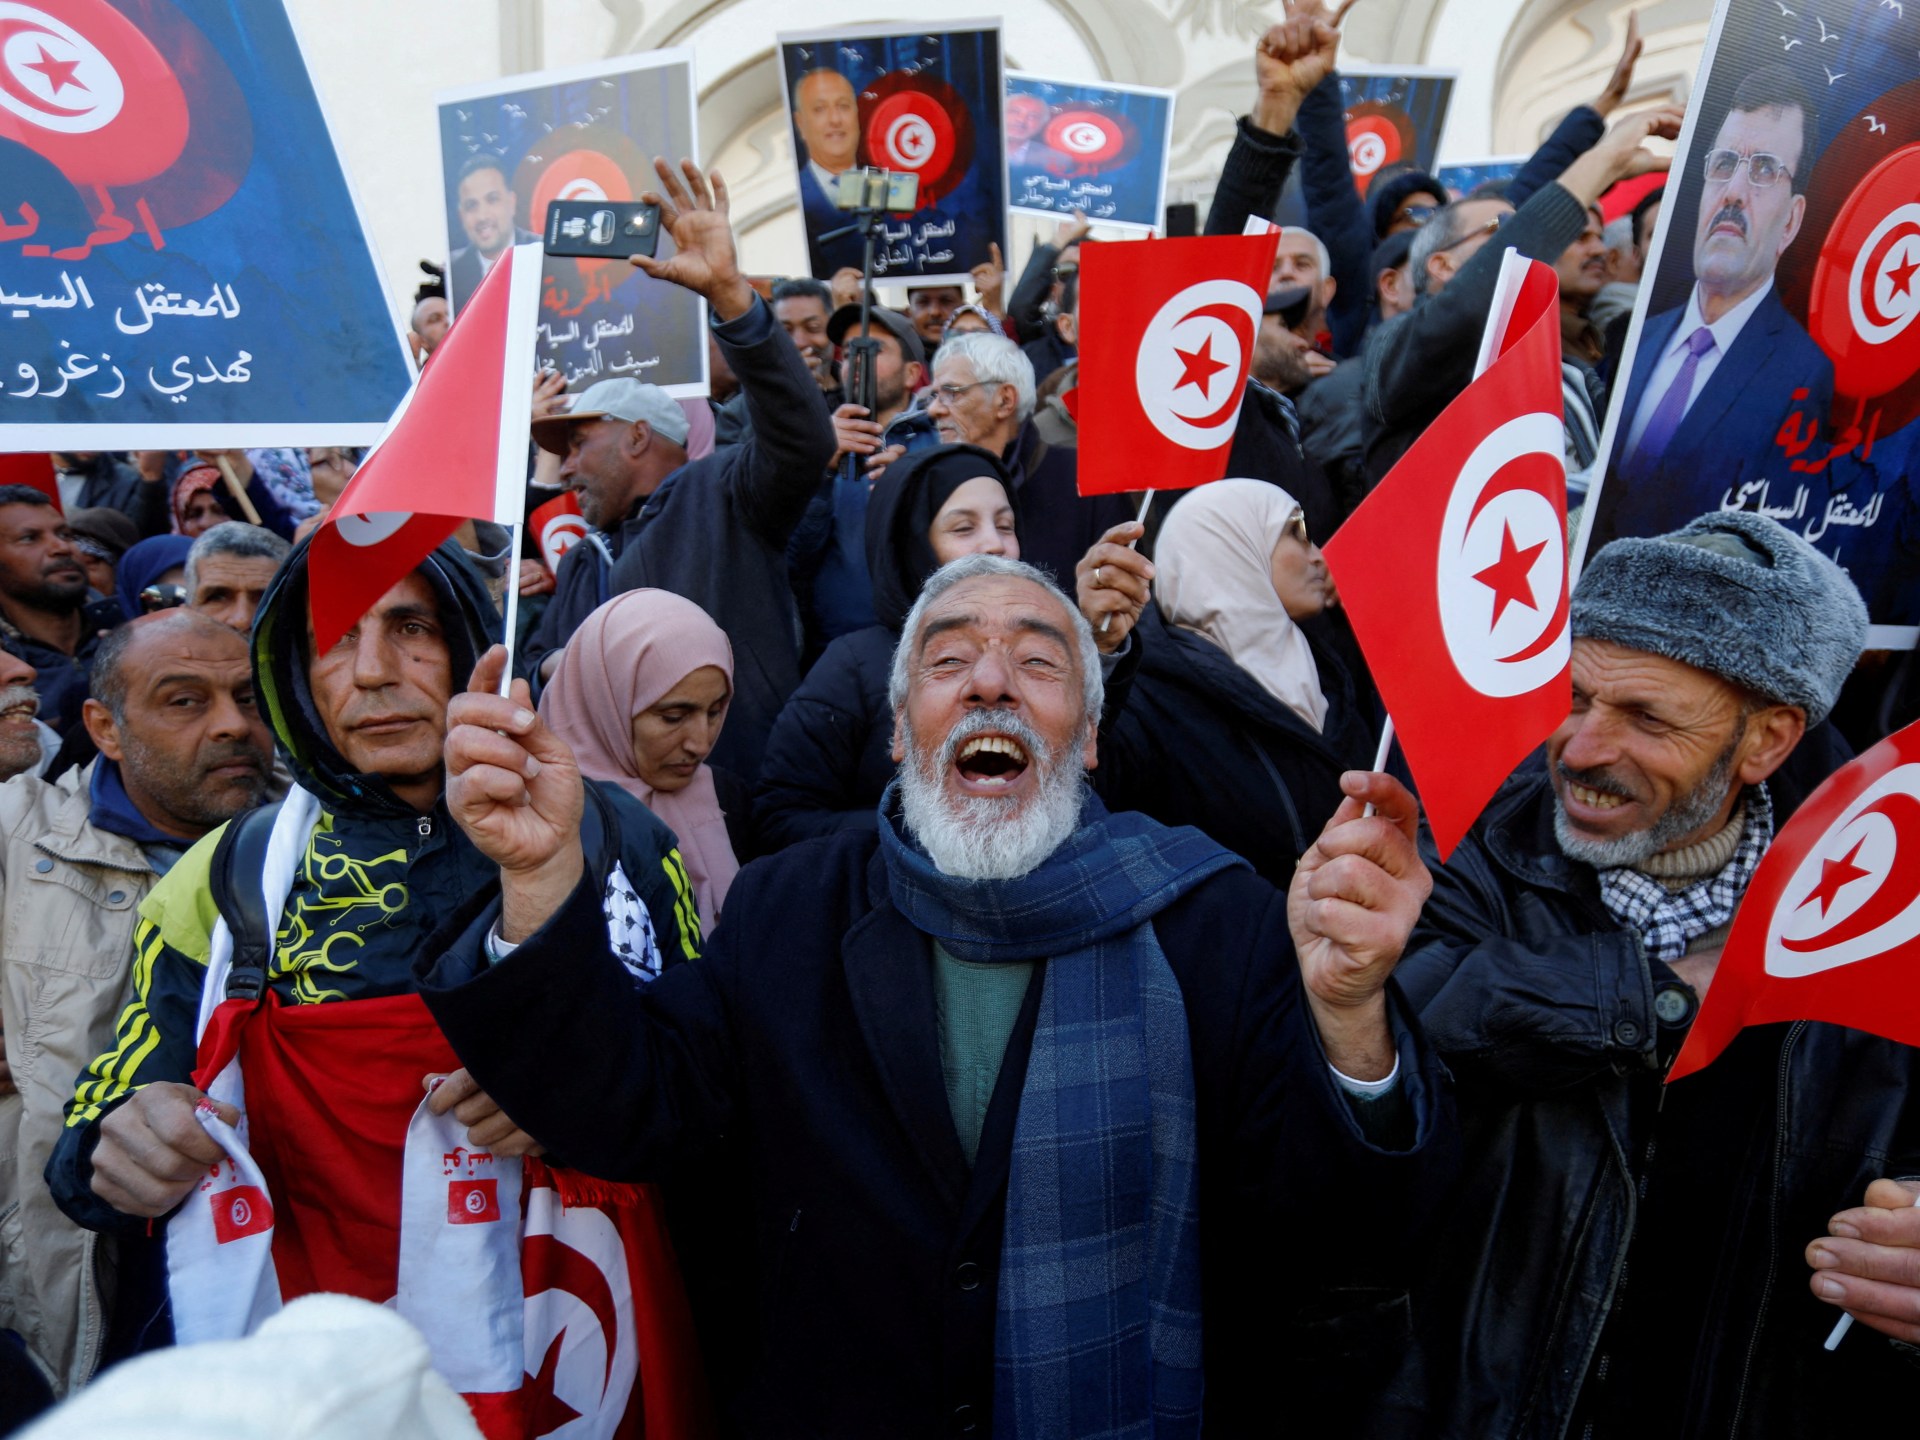 Keluarga Pemimpin Tunisia yang Dipenjara Menghadapi Pengadilan di Afrika |  Berita Politik